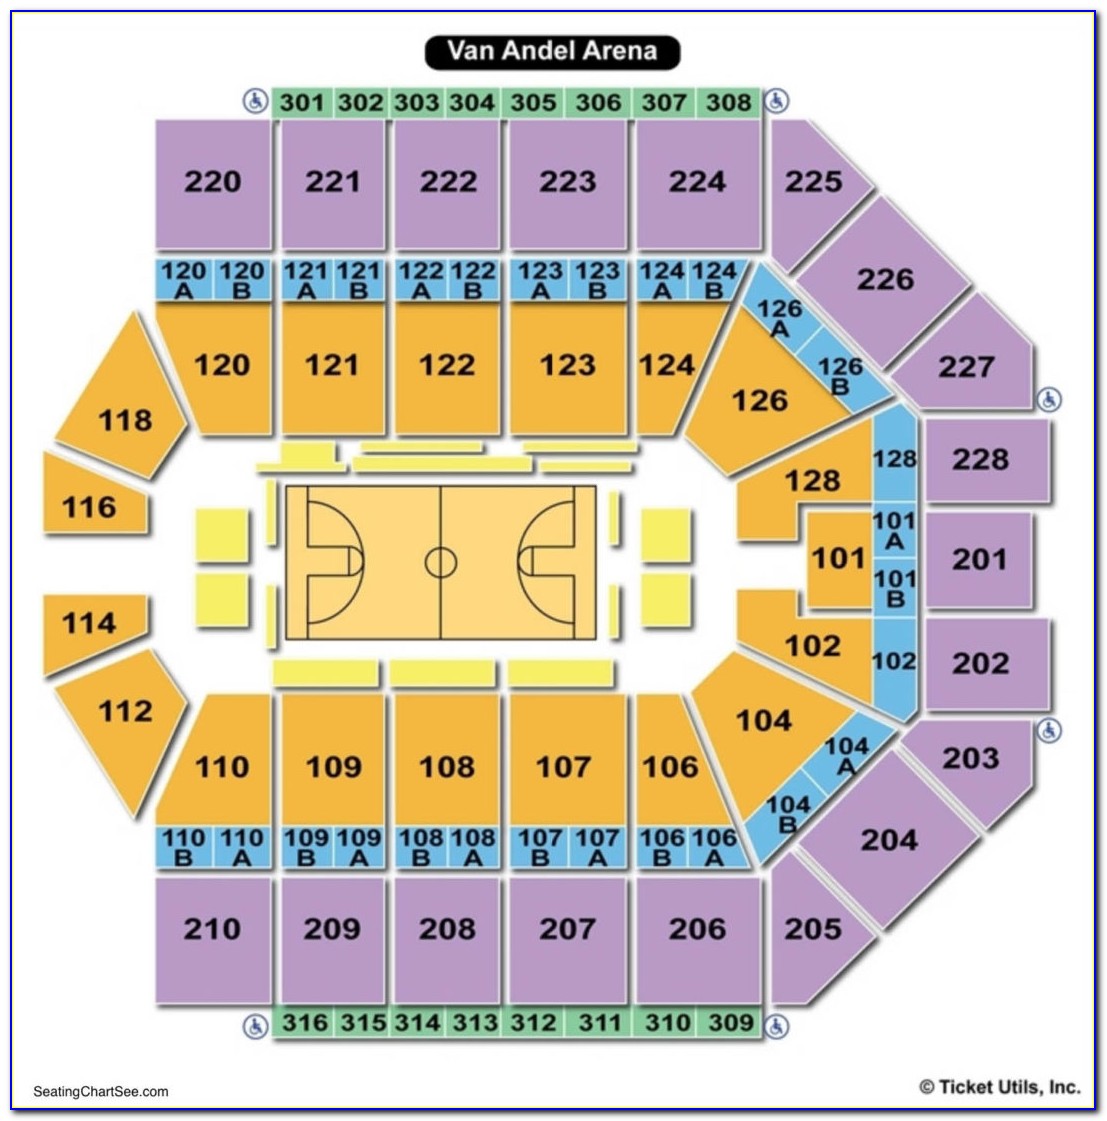 Van Andel Arena Map Seats